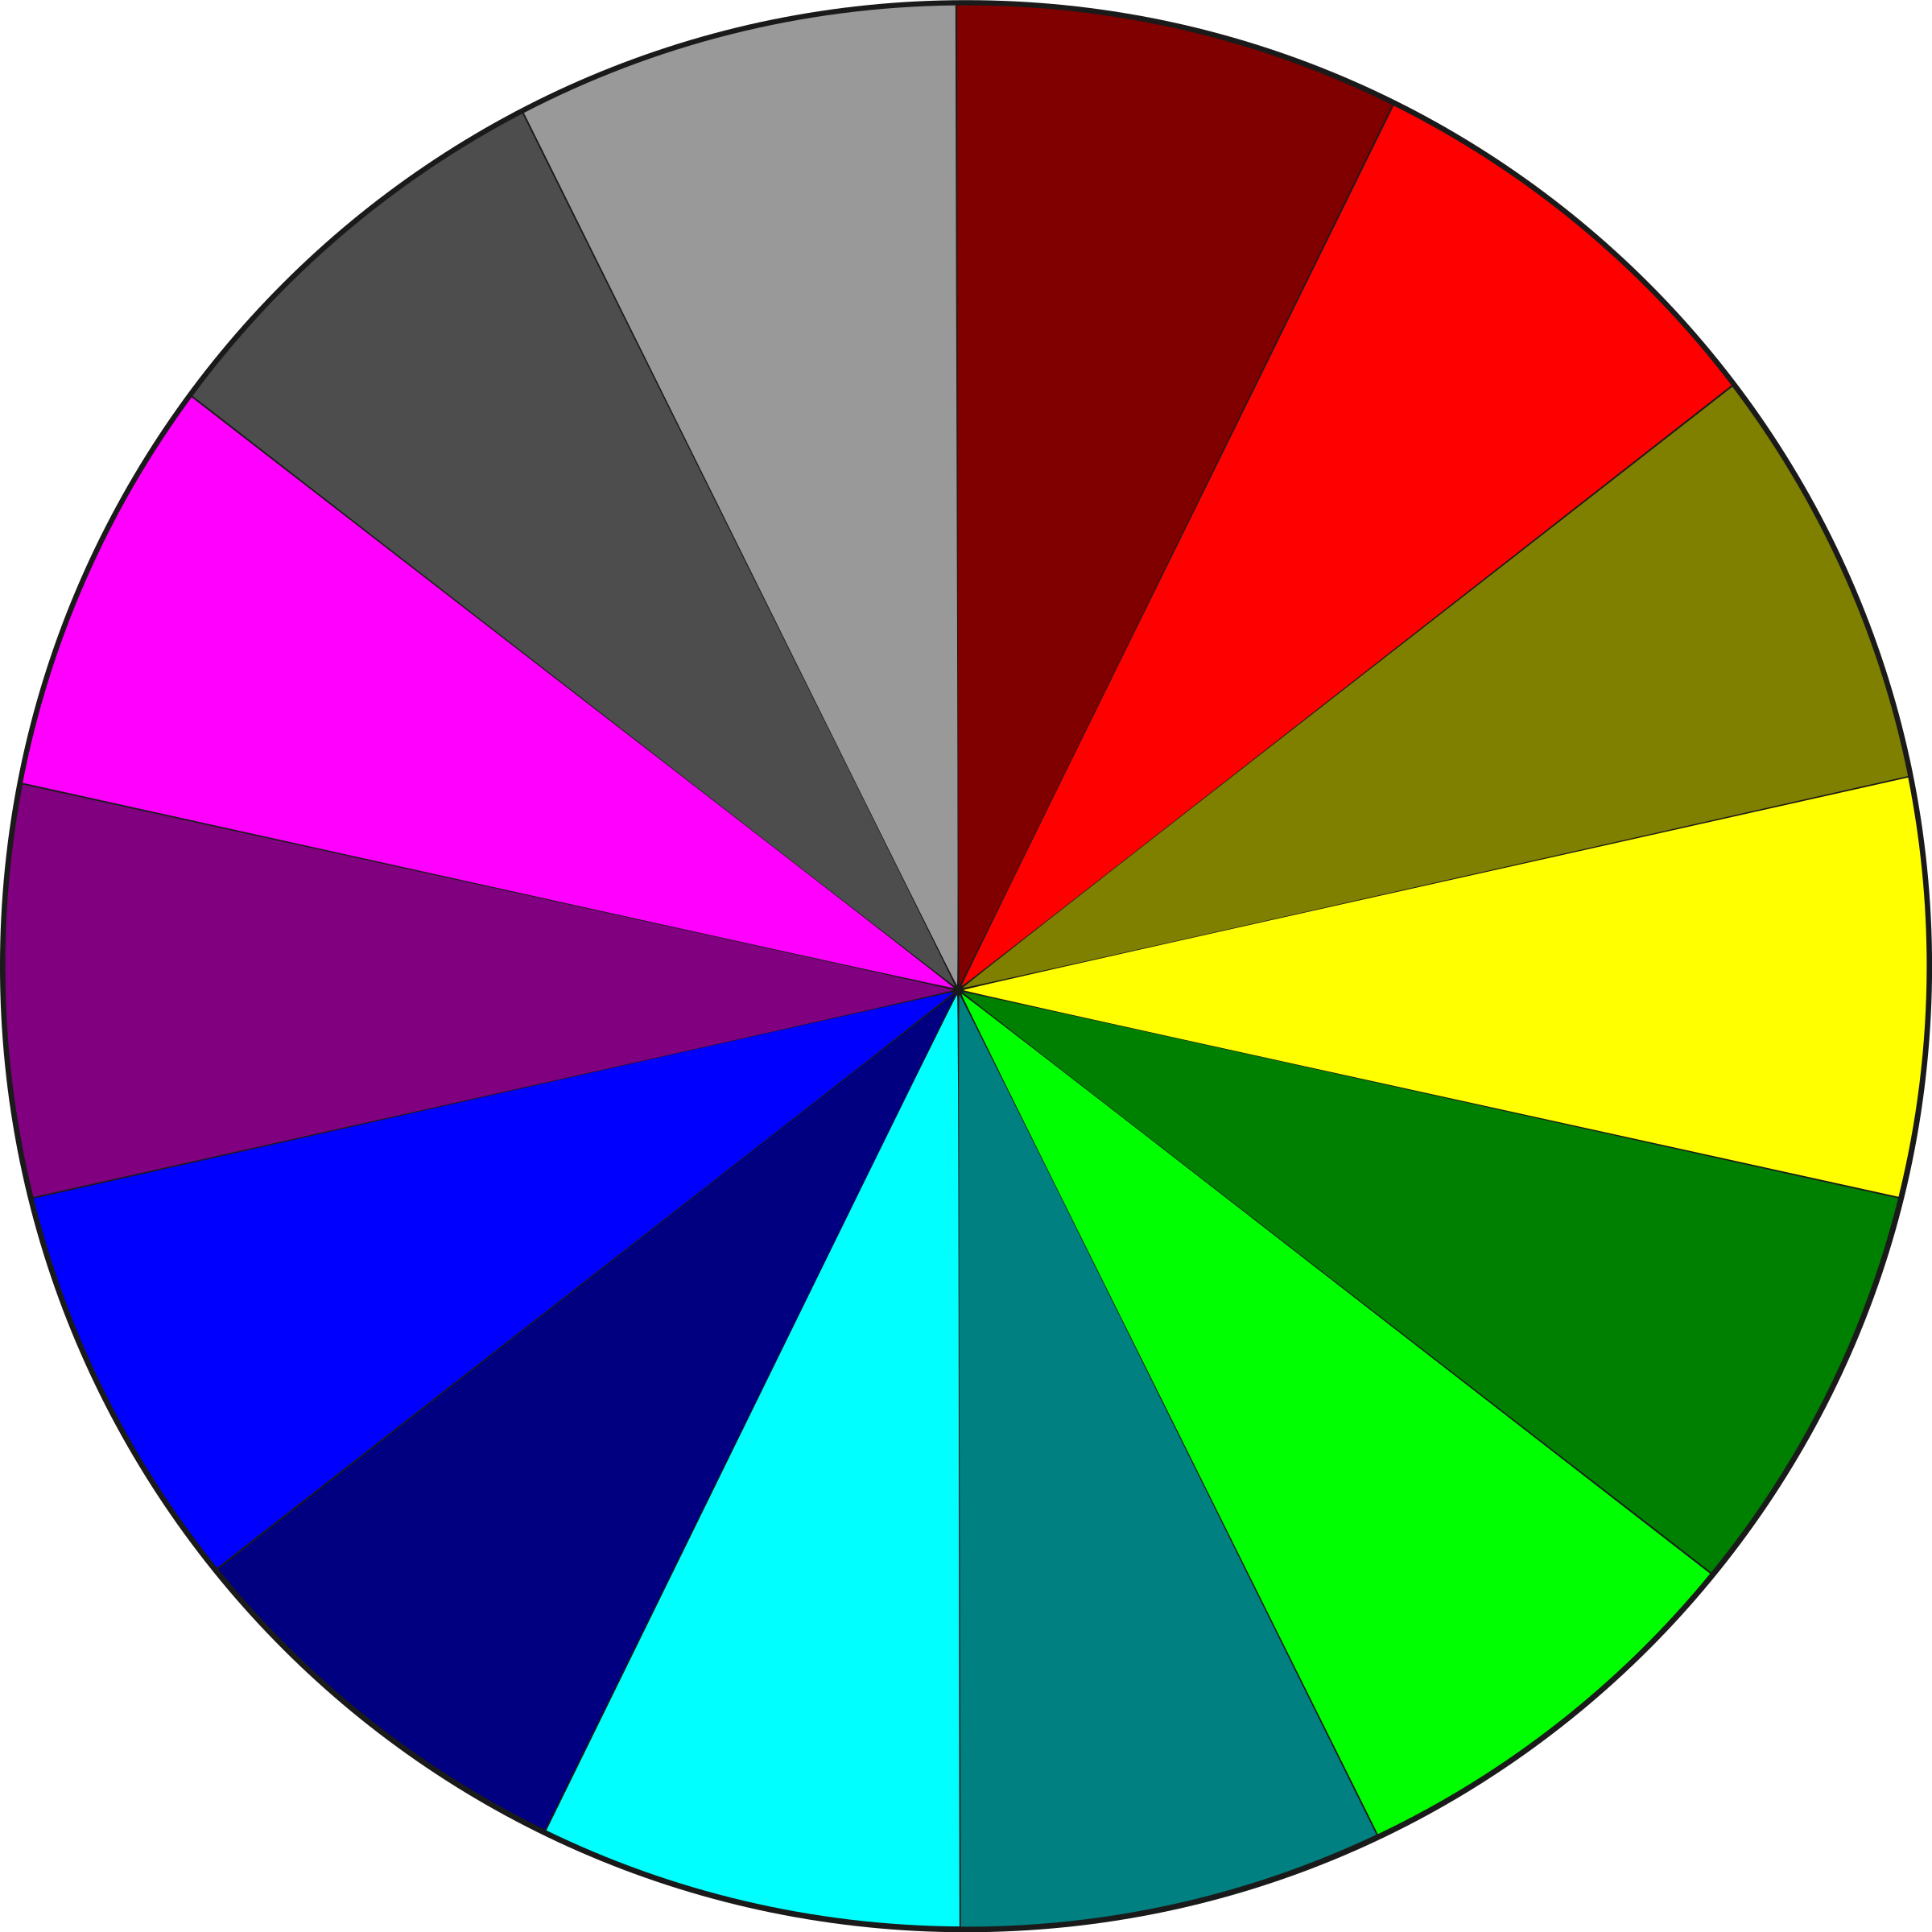 Цвета 12. Цветовой спектр. Спектр цветов круг. Круговая цветовая диаграмма. Спектральный цветовой круг.